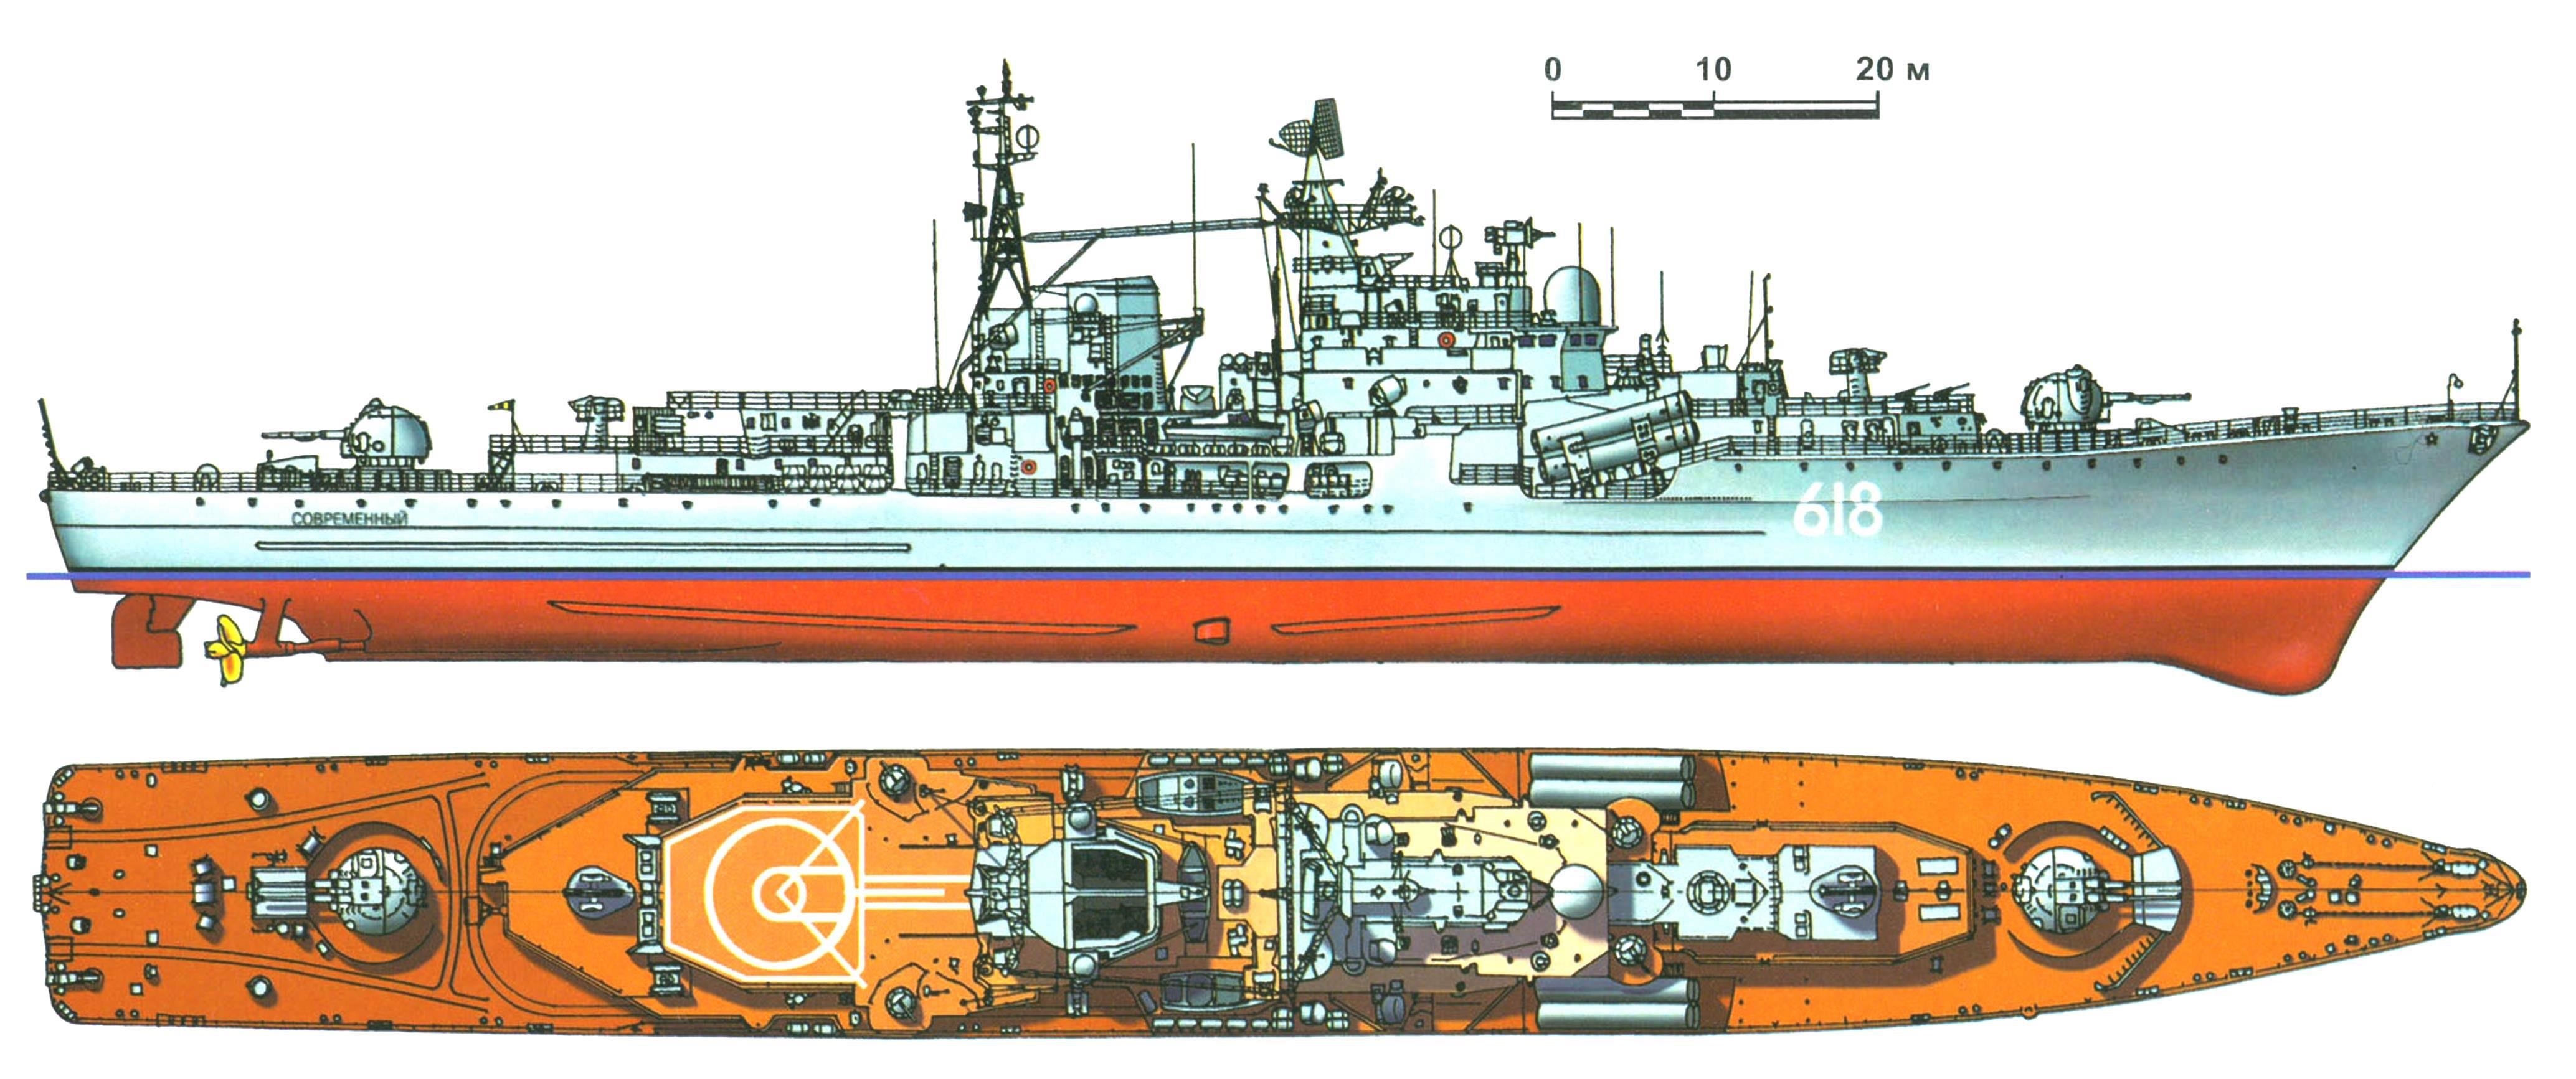 Эсминец "Современный" (проект 956), СССР, 1981 г.